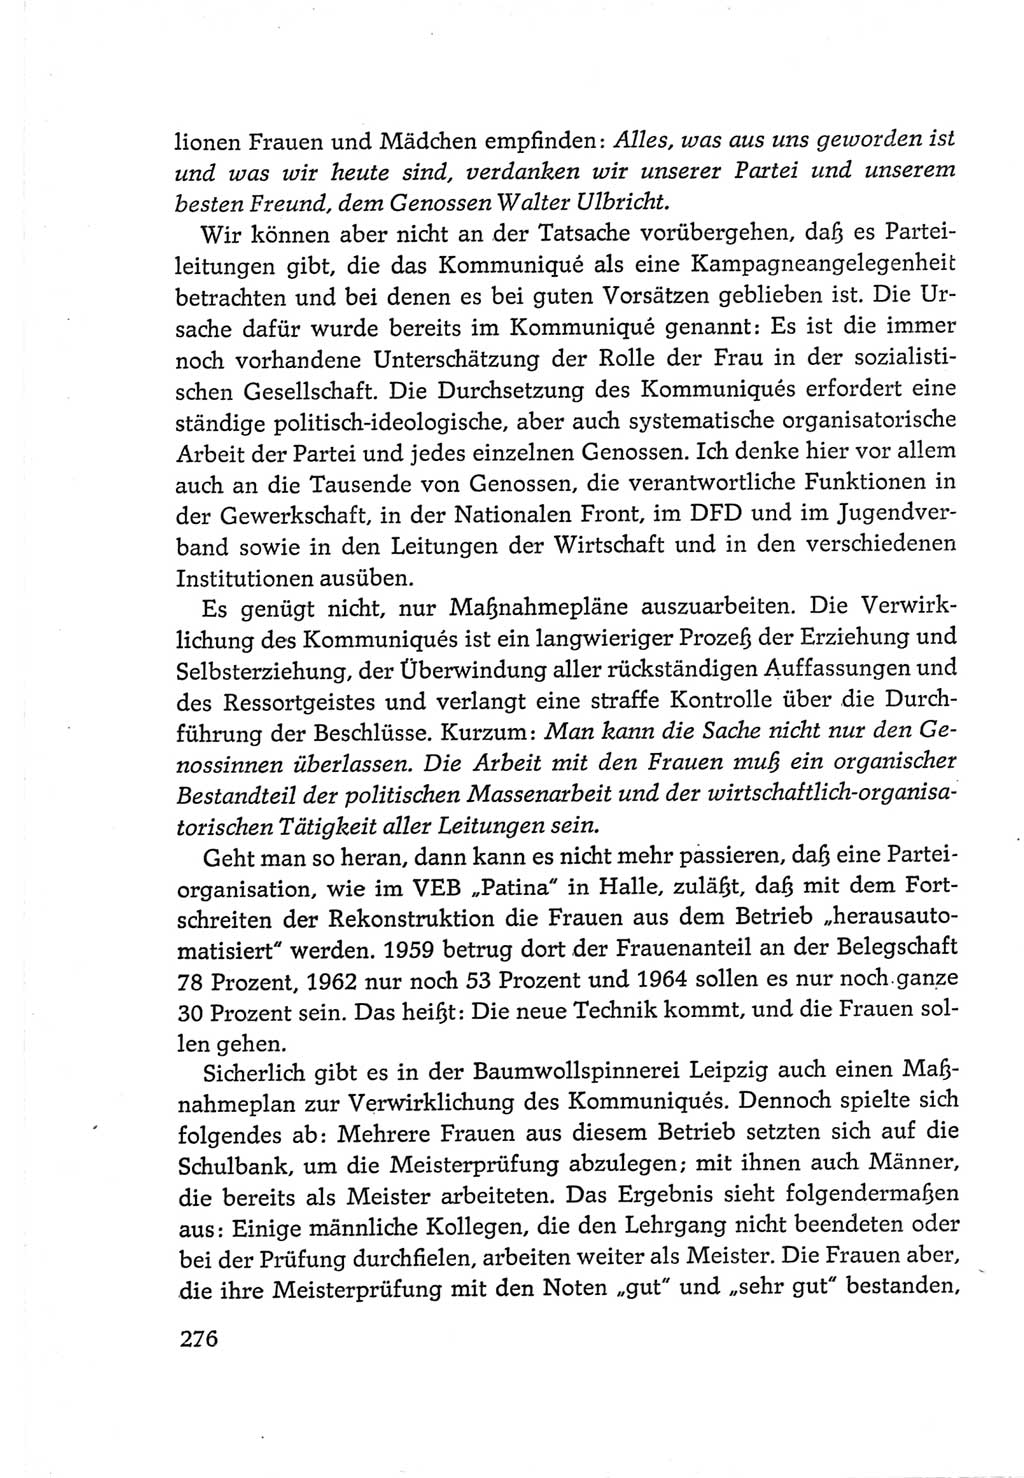 Protokoll der Verhandlungen des Ⅵ. Parteitages der Sozialistischen Einheitspartei Deutschlands (SED) [Deutsche Demokratische Republik (DDR)] 1963, Band Ⅲ, Seite 276 (Prot. Verh. Ⅵ. PT SED DDR 1963, Bd. Ⅲ, S. 276)